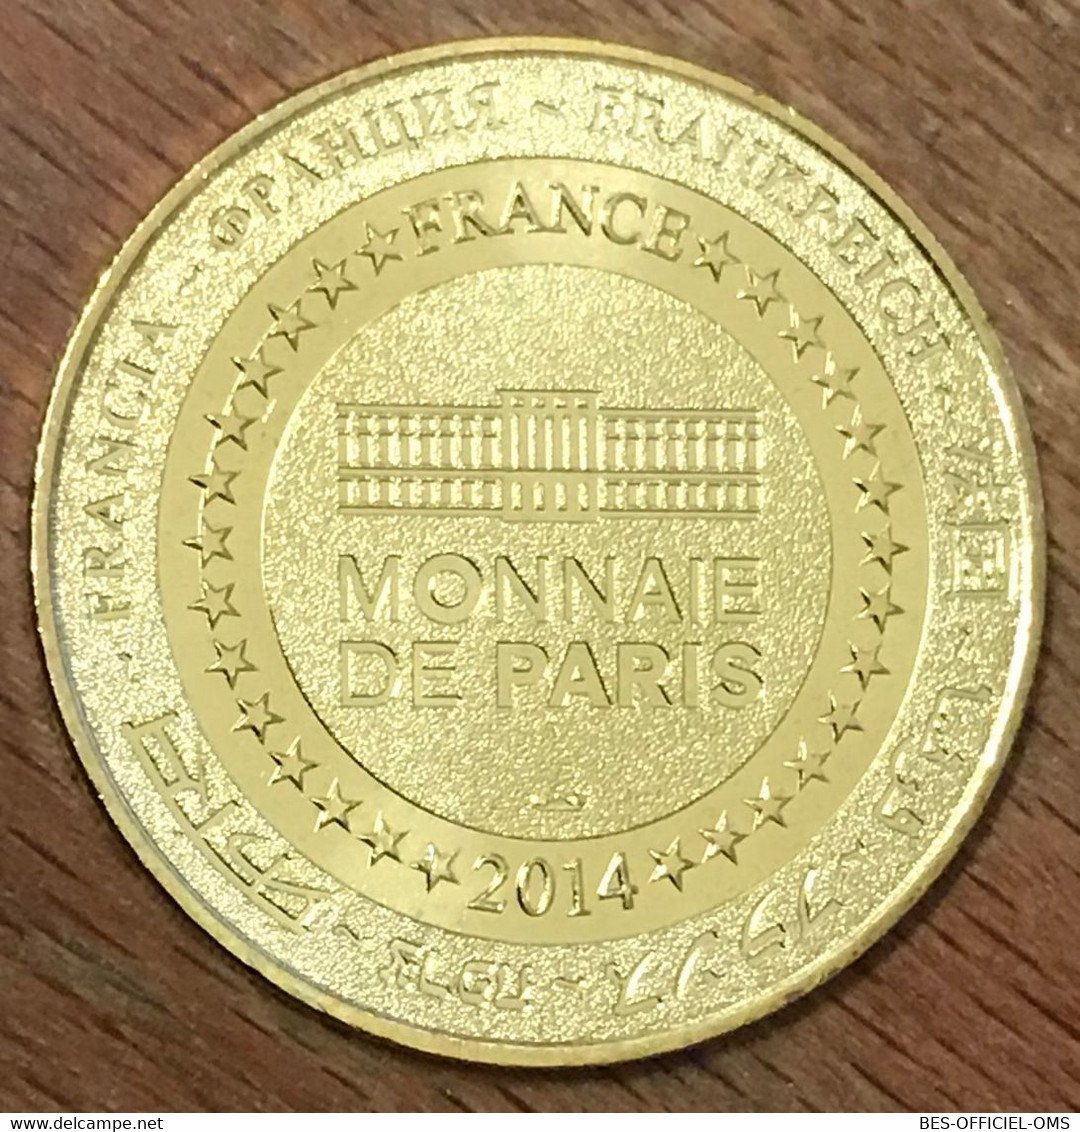 74 ANNECY PALAIS DE L'ÎLE 2014 MÉDAILLE MONNAIE DE PARIS JETON TOURISTIQUE MEDALS TOKENS COINS - 2014